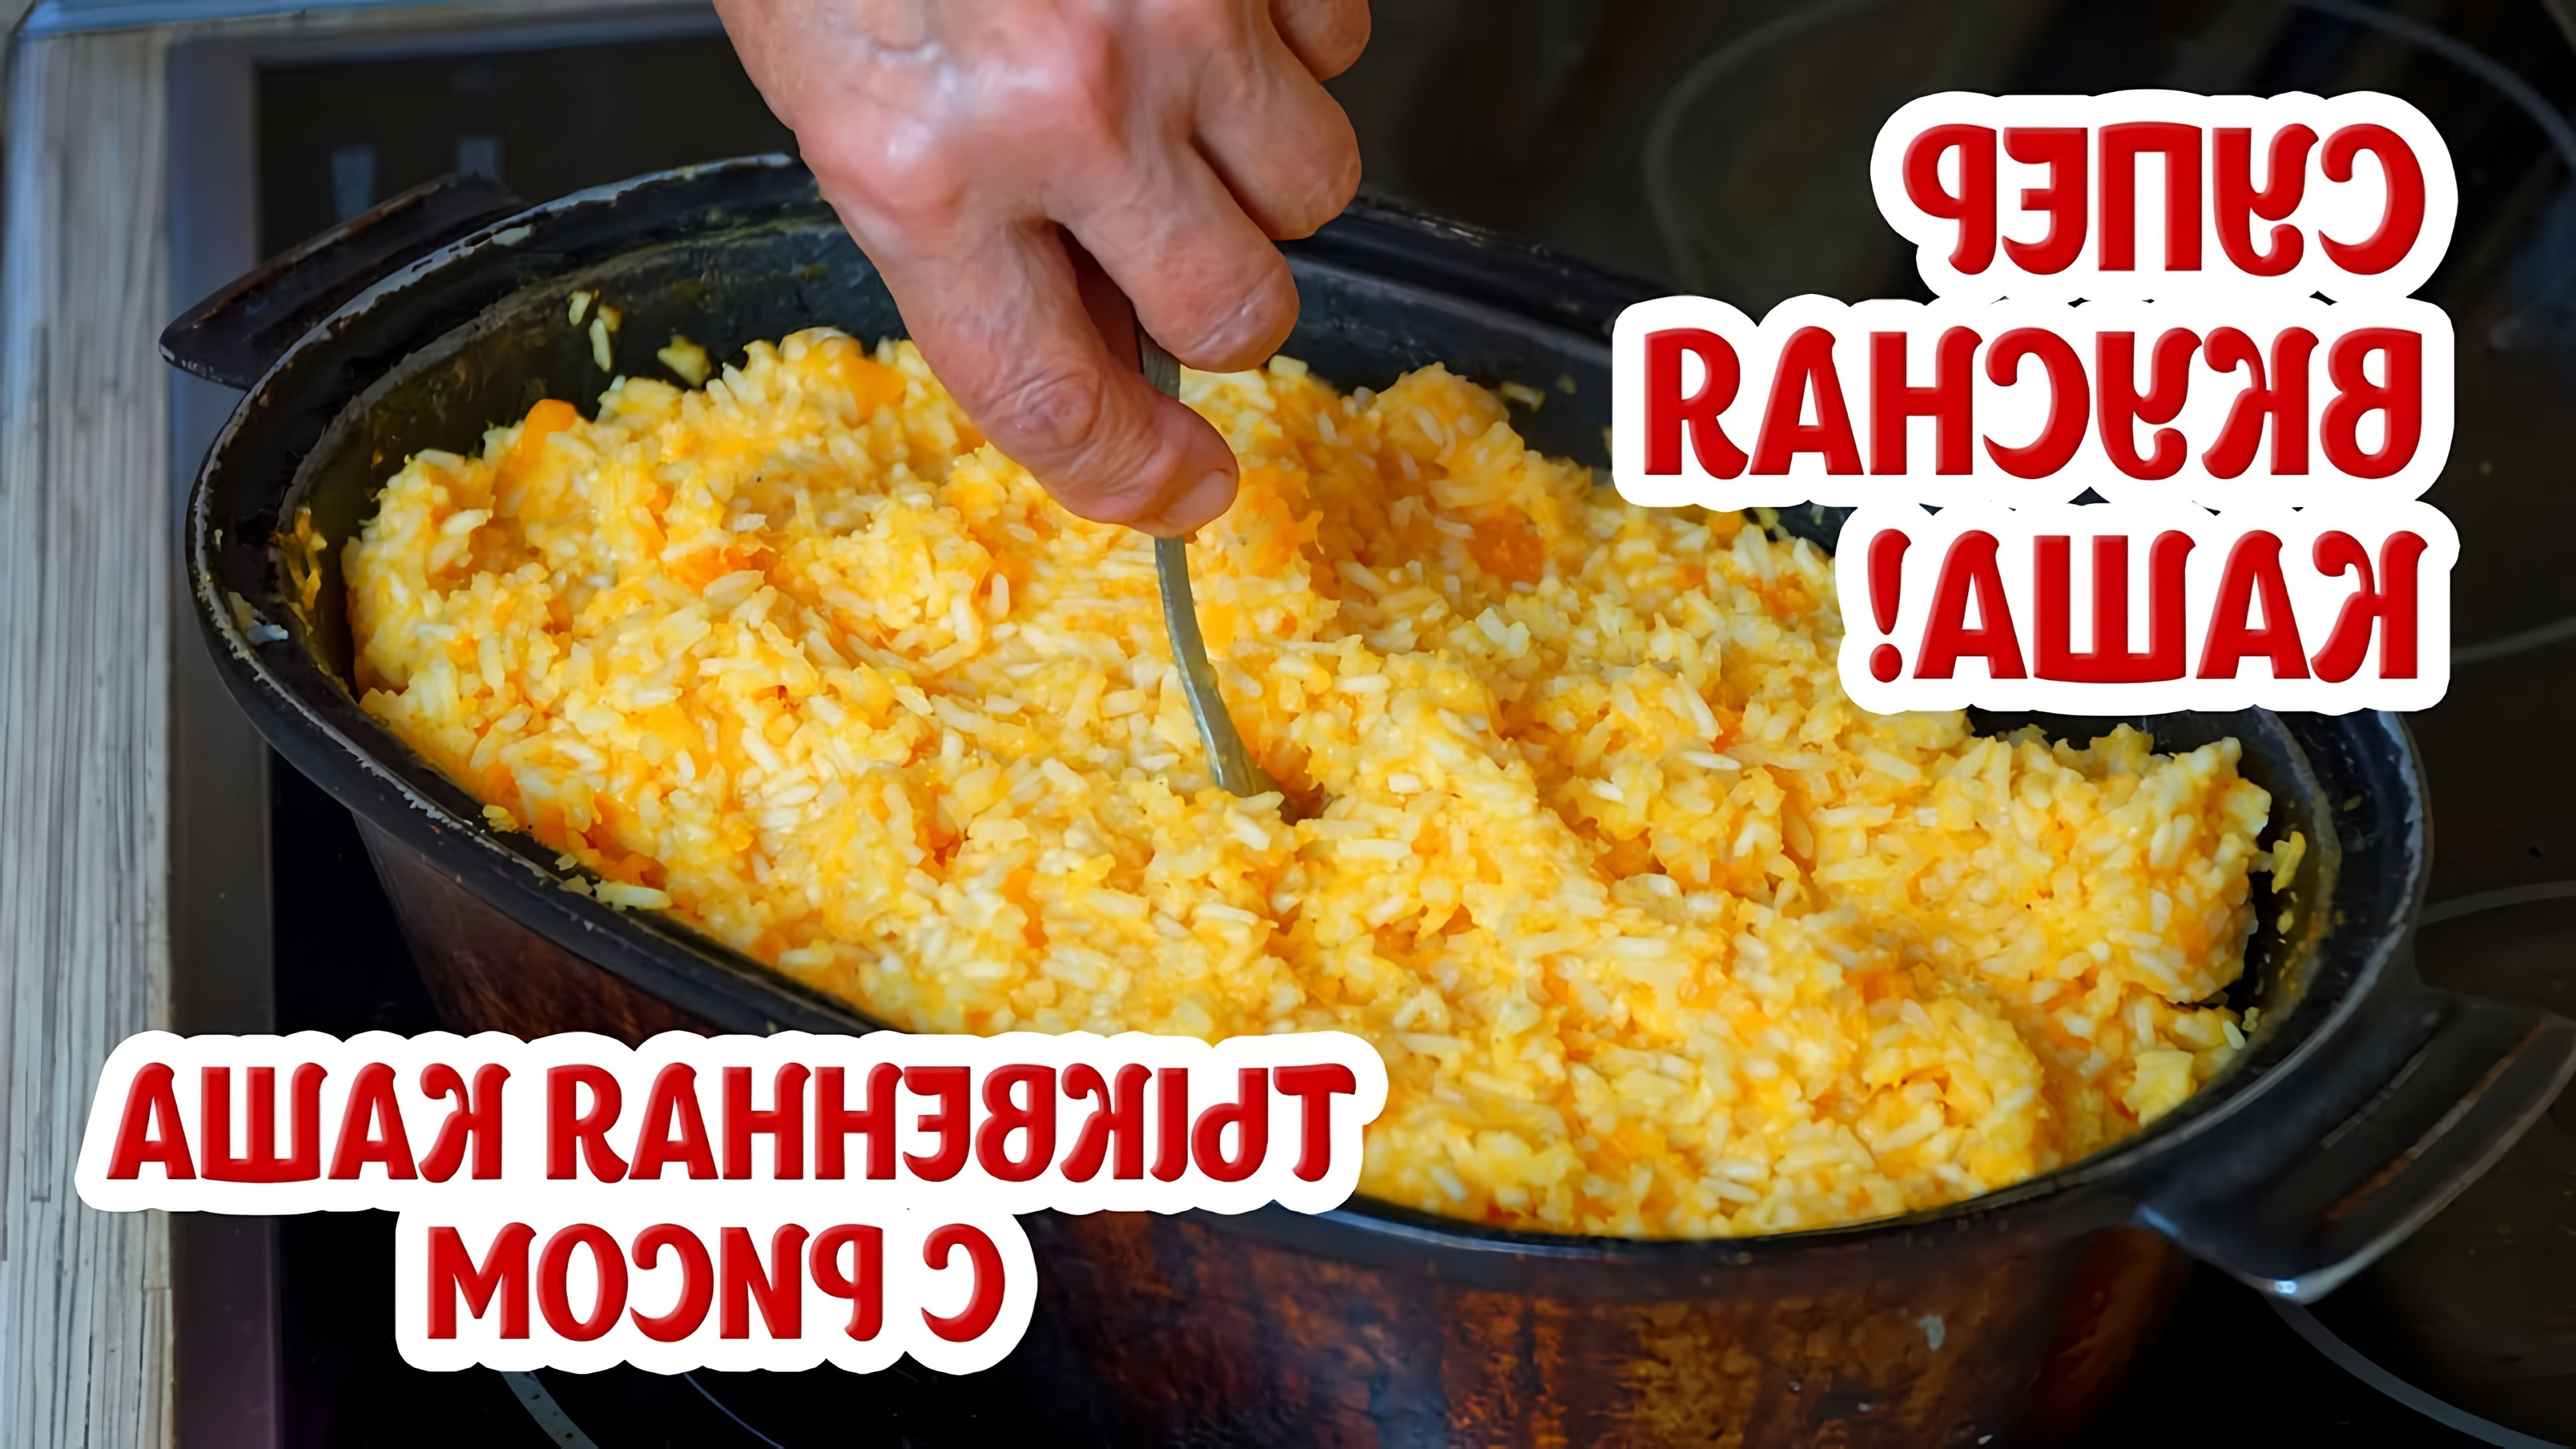 В этом видео-ролике рассказывается о том, как приготовить вкусную и полезную тыквенную кашу с рисом